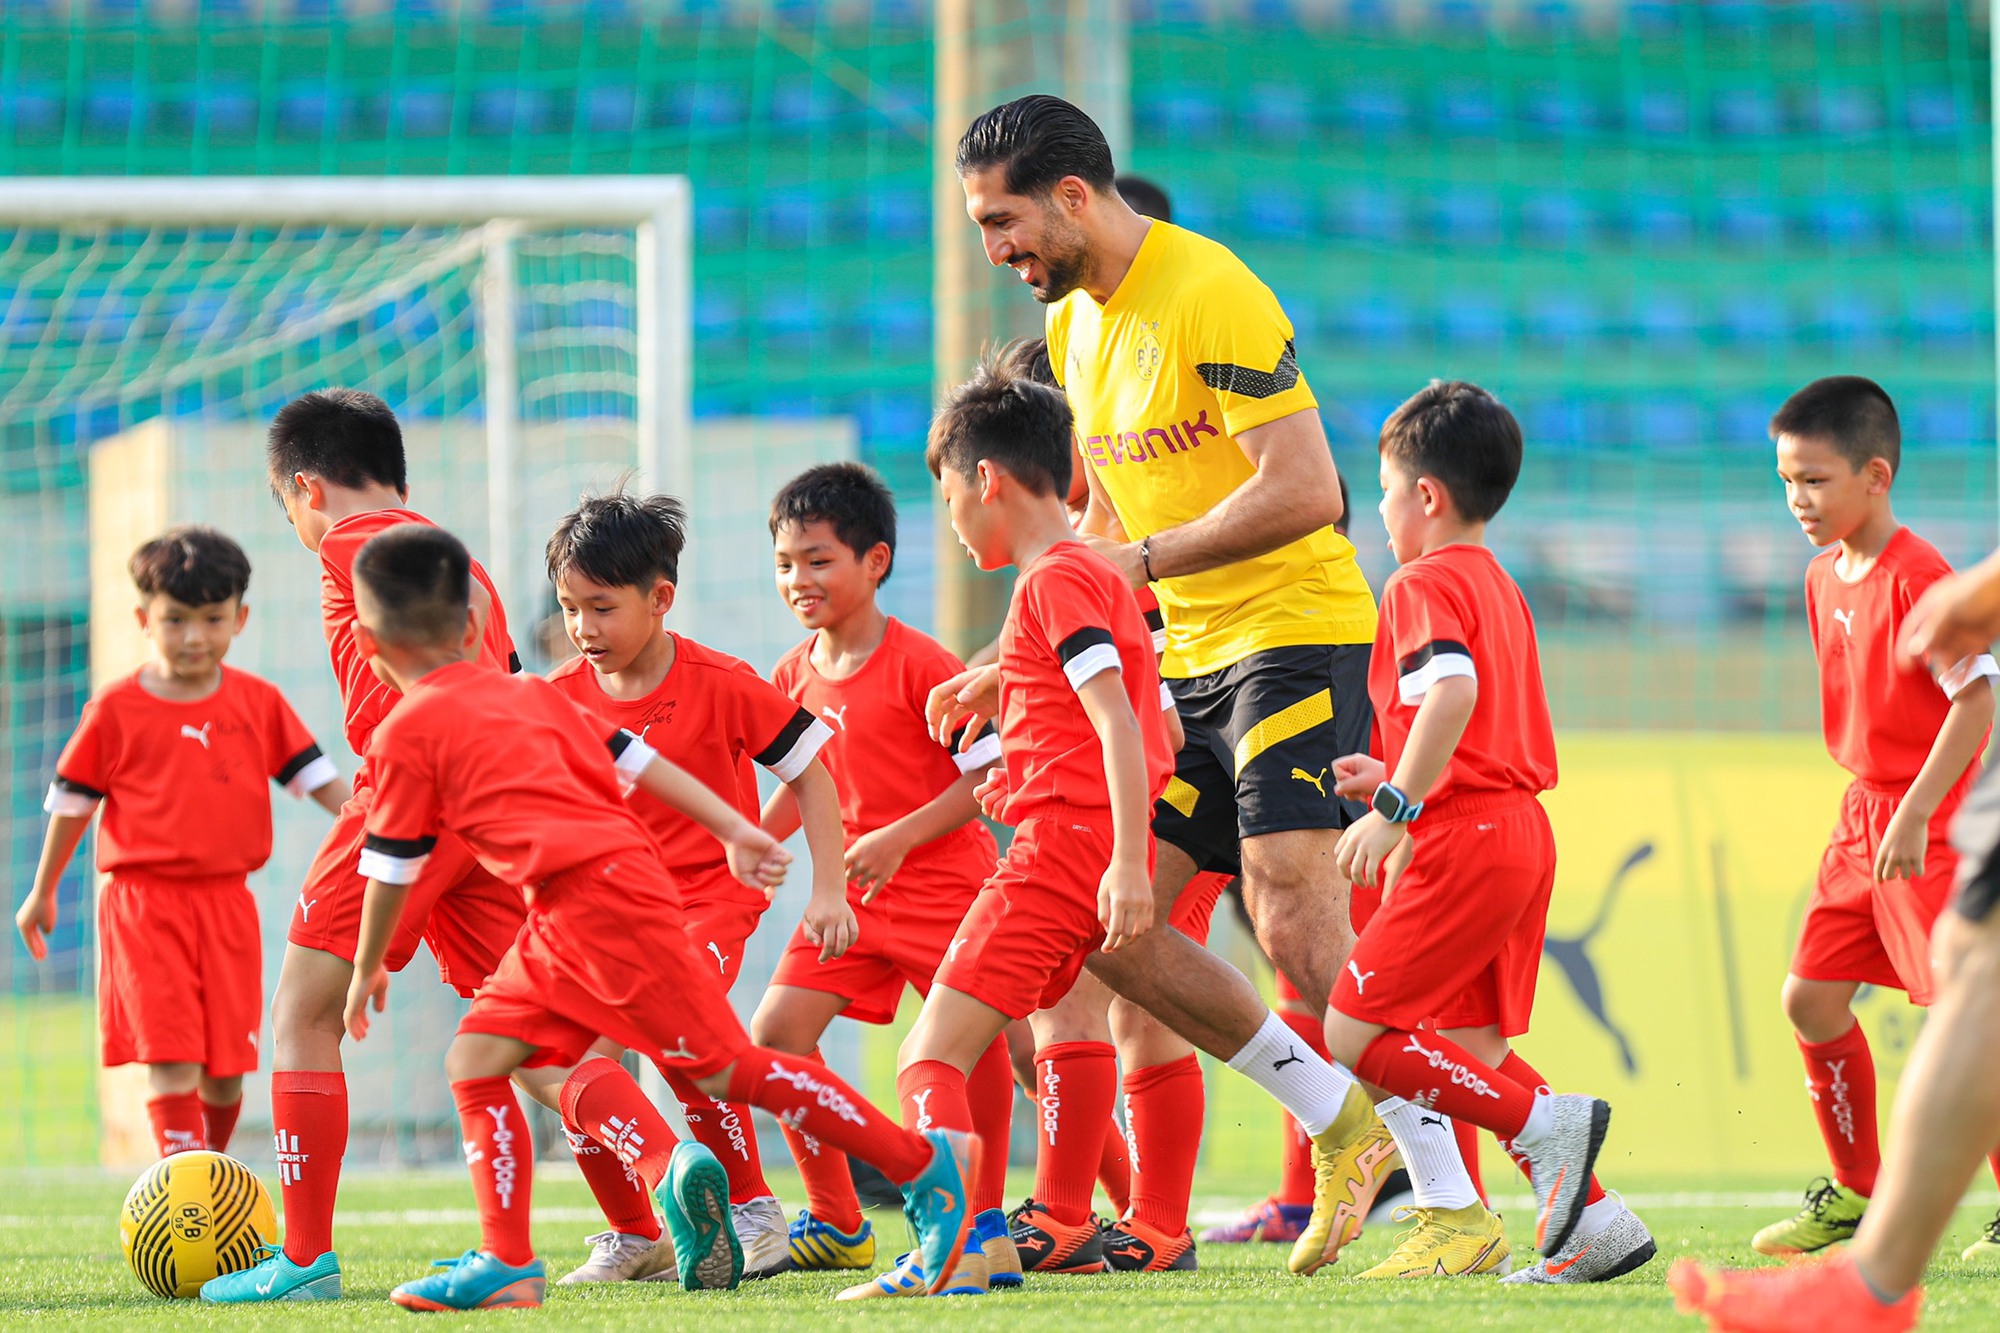 Danh thủ Hồng Sơn và Mạc Hồng Quân cùng dàn sao Dortmund "trắng tay" trong trận giao hữu trước các cầu thủ nhí Việt Nam-6